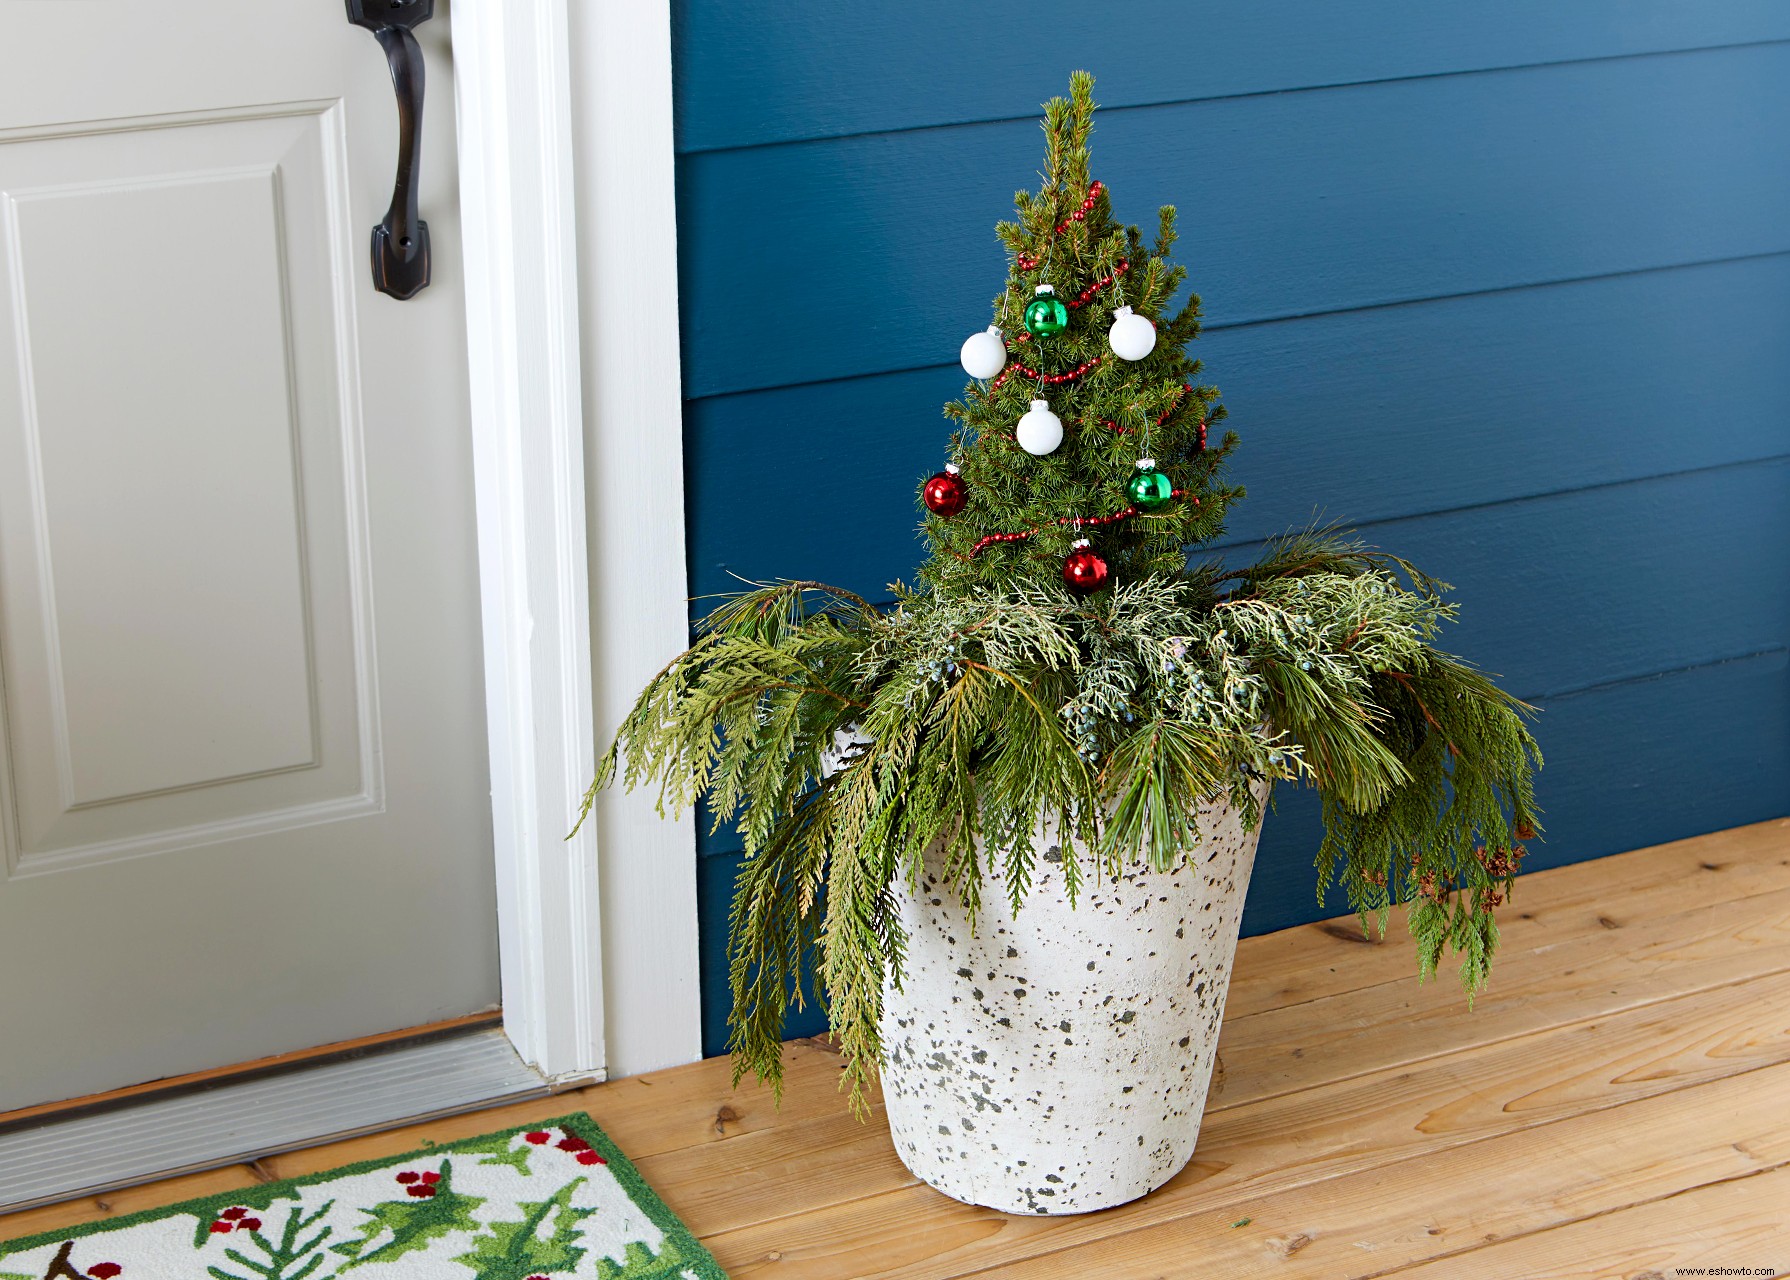 Haga estas sencillas exhibiciones de contenedores de invierno para agregar alegría navideña a su porche delantero 